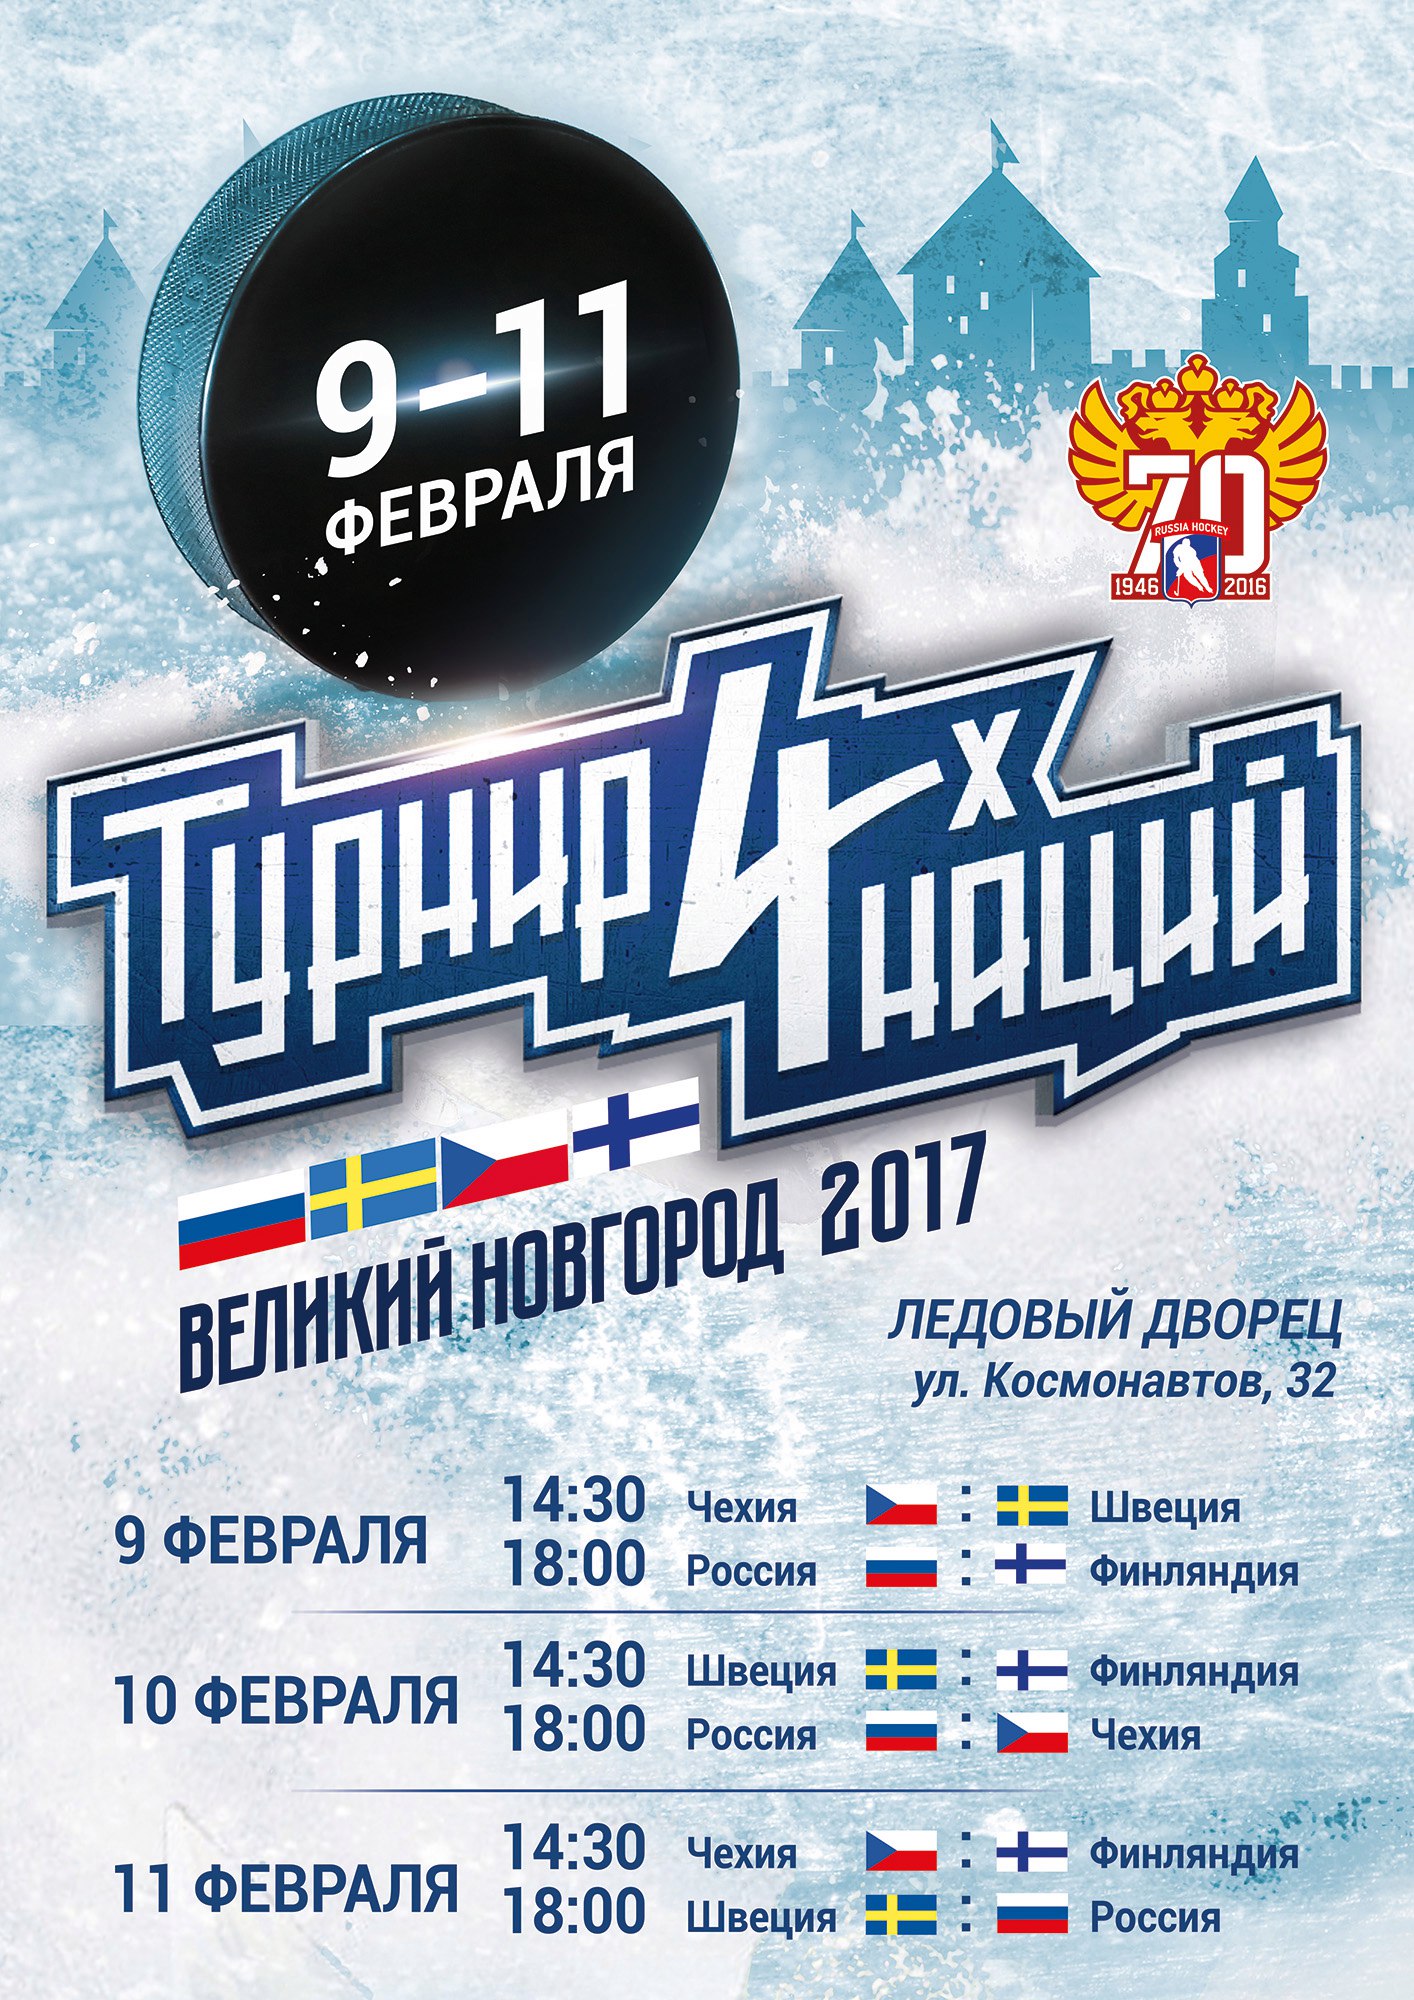 Турнир четырех наций по хоккею в Великом Новгороде. Афиша